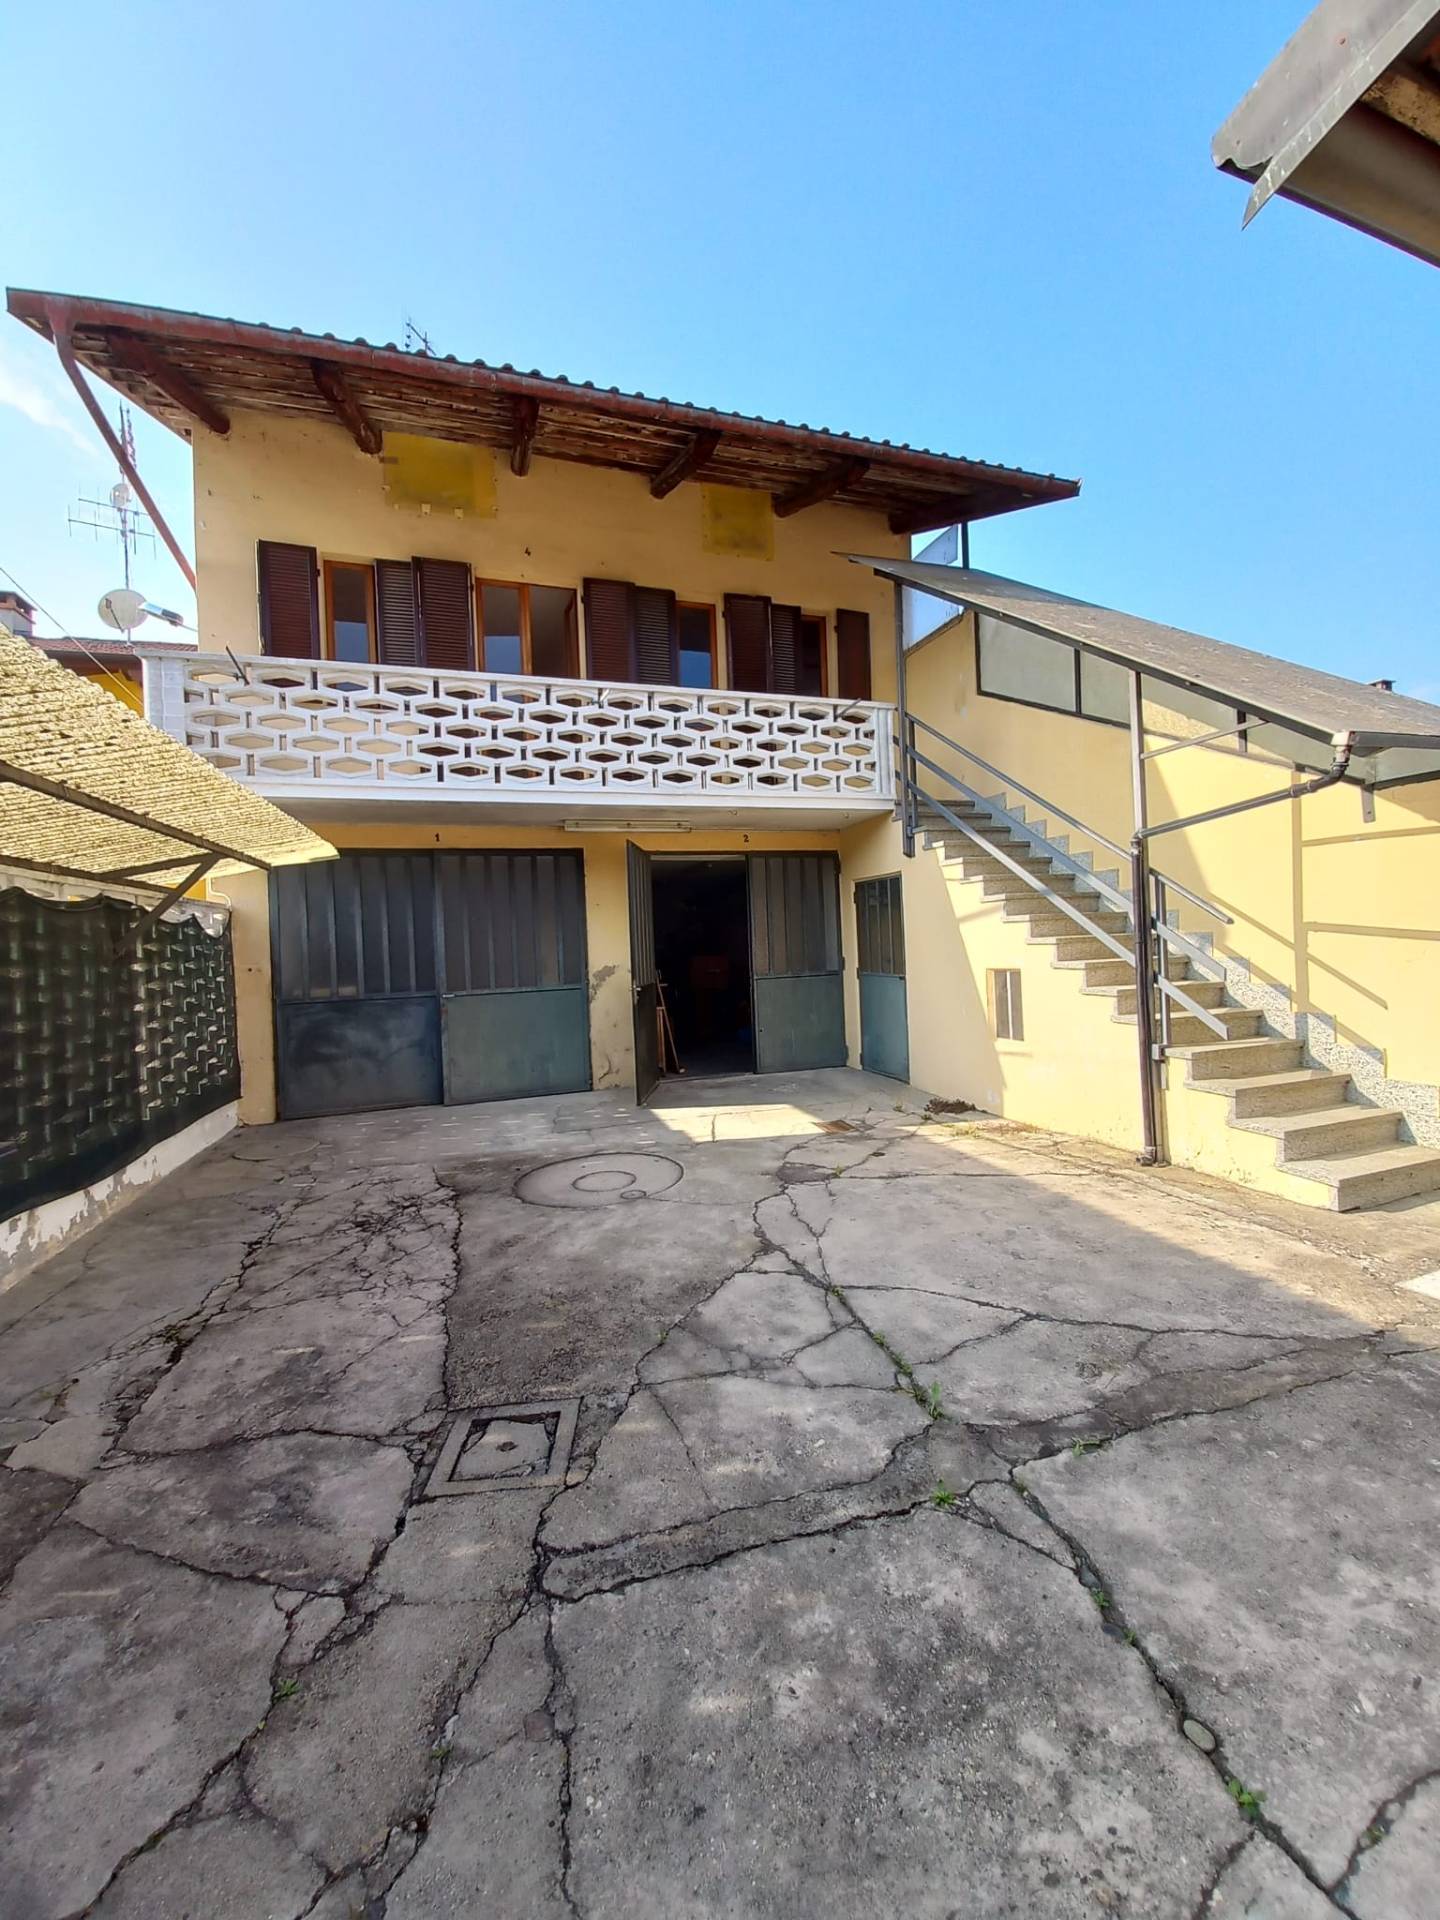 Villa Bifamiliare in vendita a Chivasso, 6 locali, zona hetto, prezzo € 75.000 | PortaleAgenzieImmobiliari.it